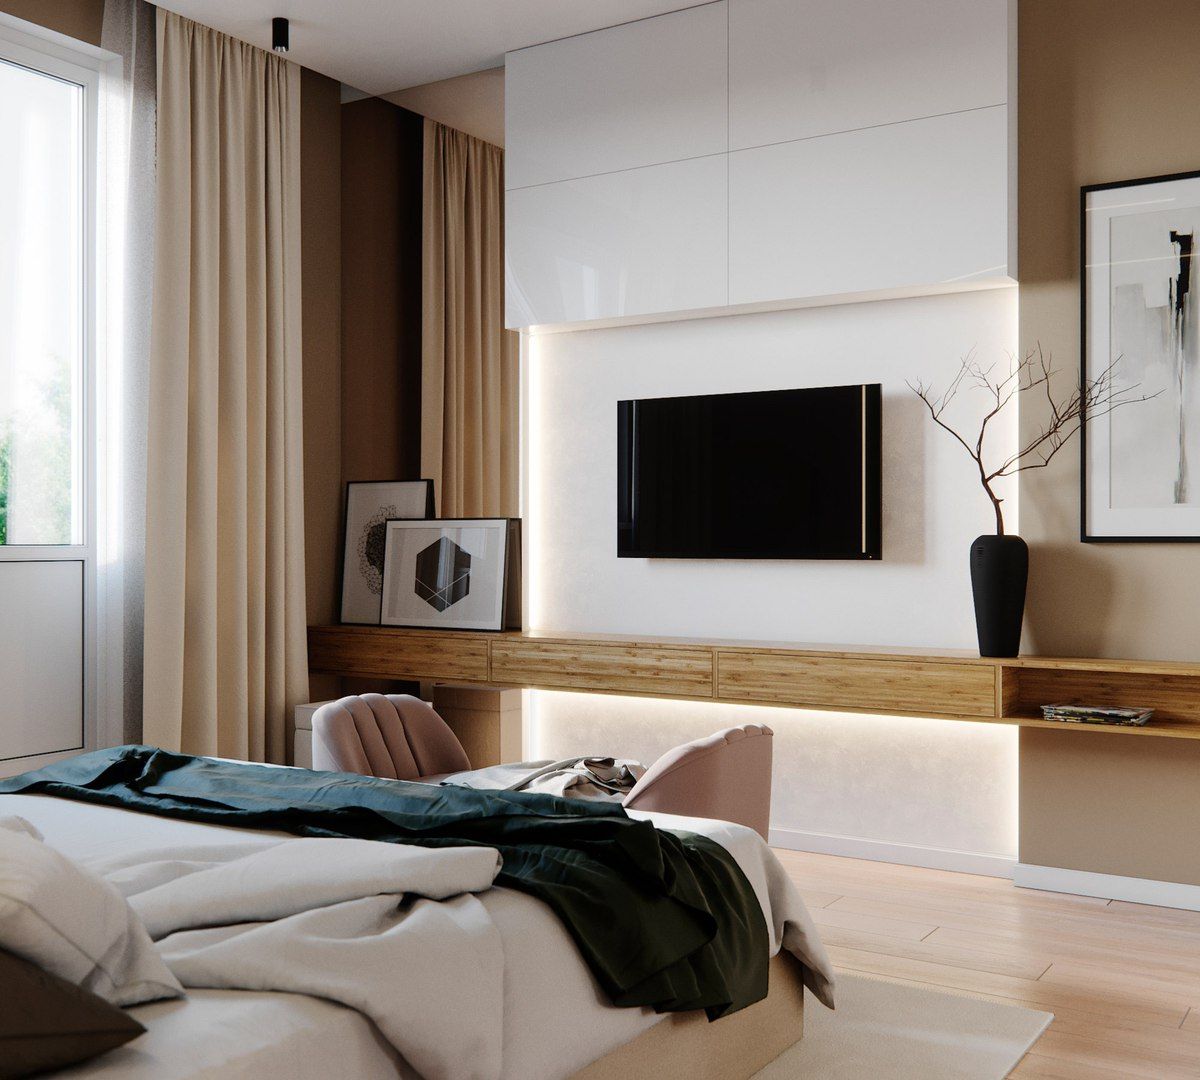 В спальне перед телевизором. Телевизор в спальне. Телевизор в спальне на стене. Интерьер спальни с телевизором. ТВ зона в спальне.